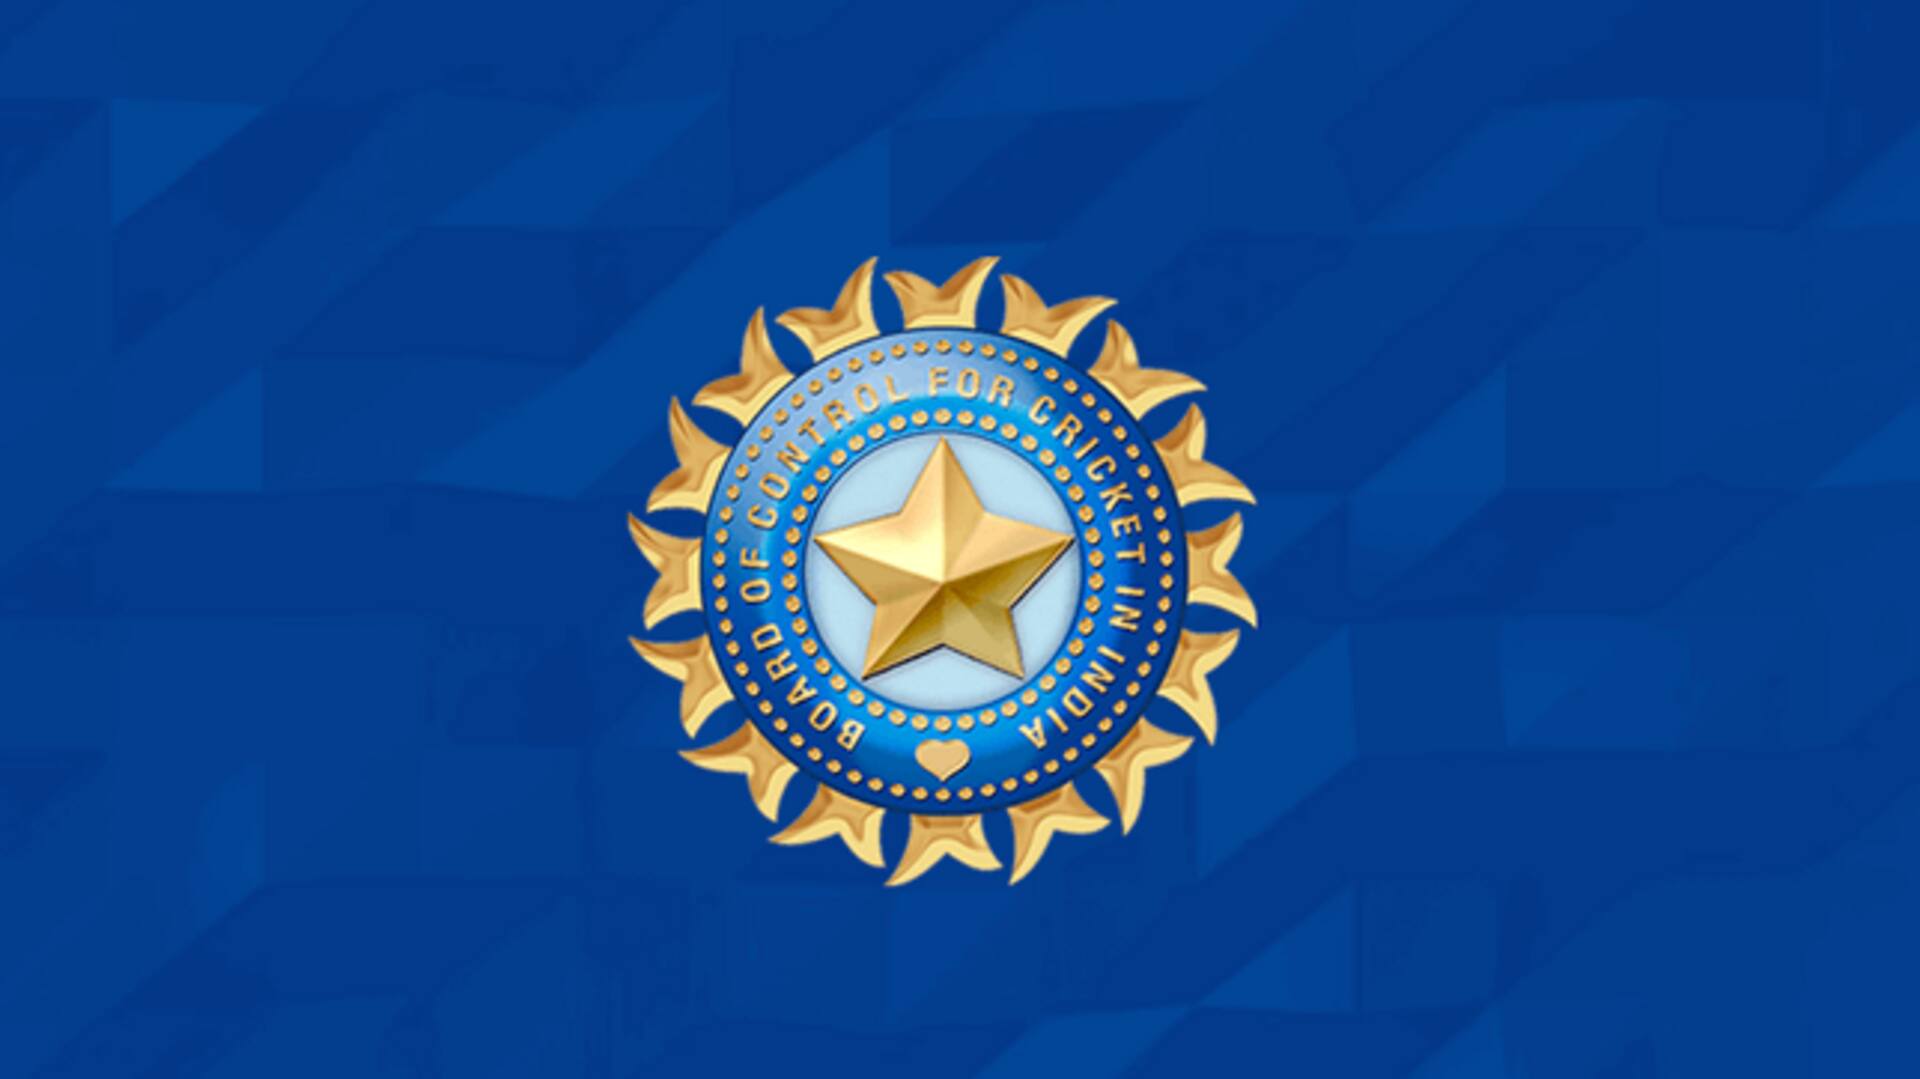 वनडे विश्वकप: कोलकाता पुलिस ने टिकटों की अवैध बिक्री मामले में BCCI को जारी किया नोटिस 